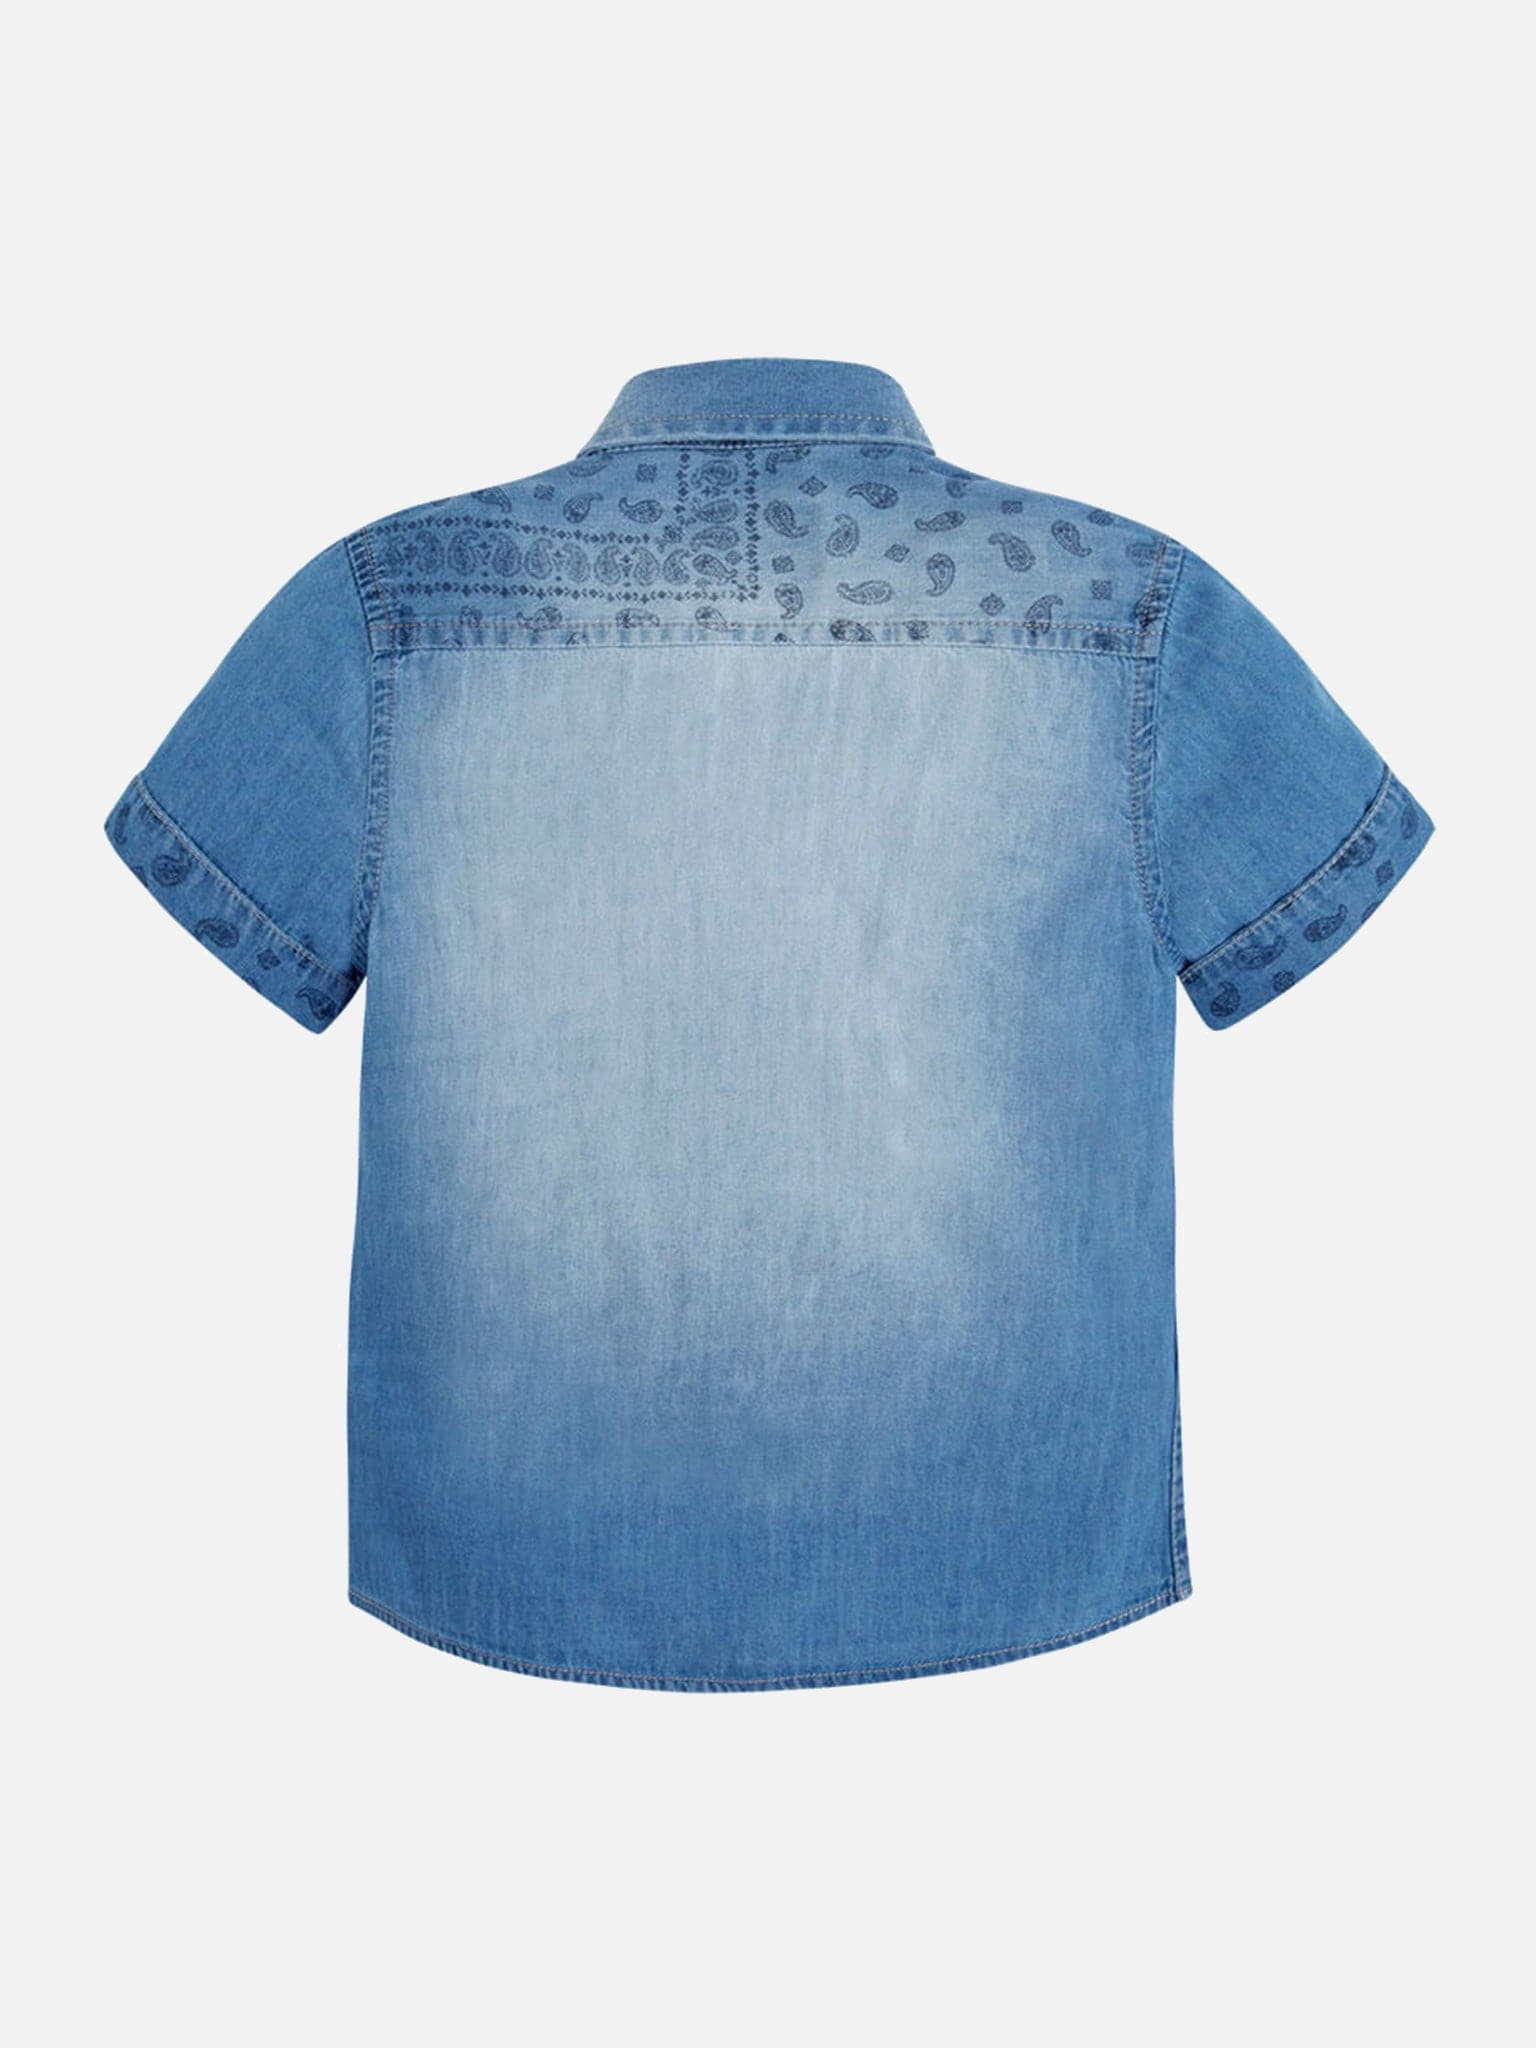 Παιδικό πουκάμισο τζιν | 03150-005